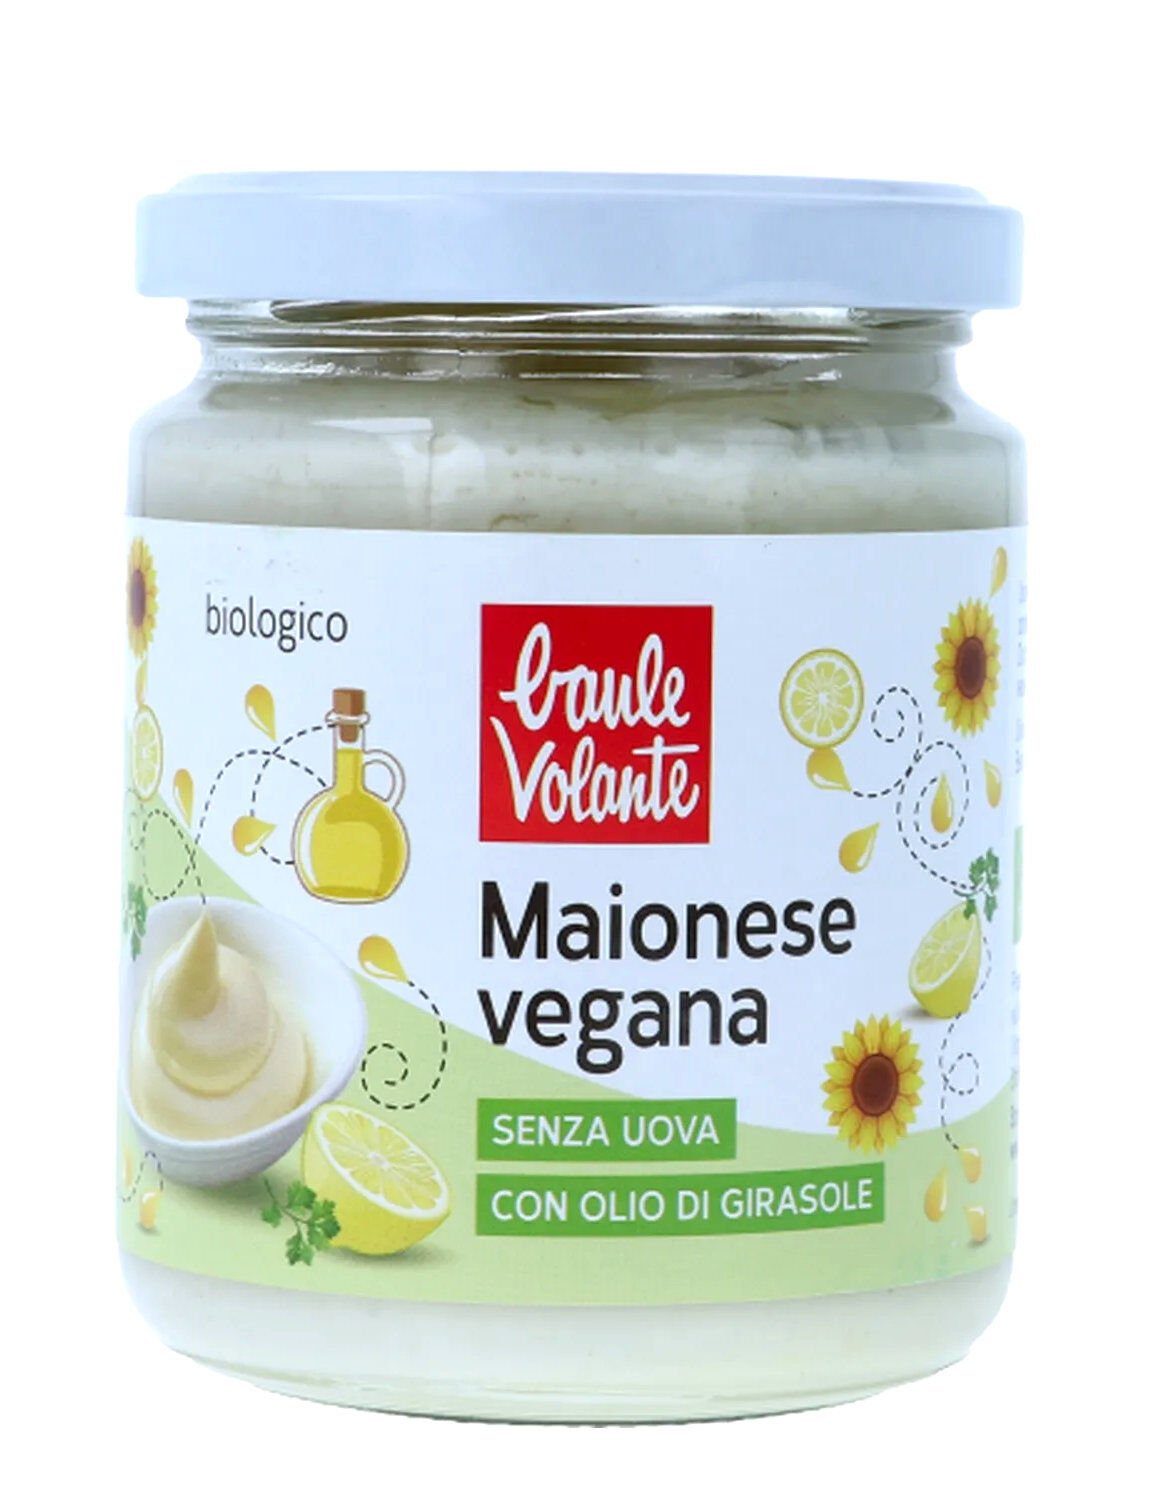 BAULE VOLANTE Maionese Vegana 230 Grammi